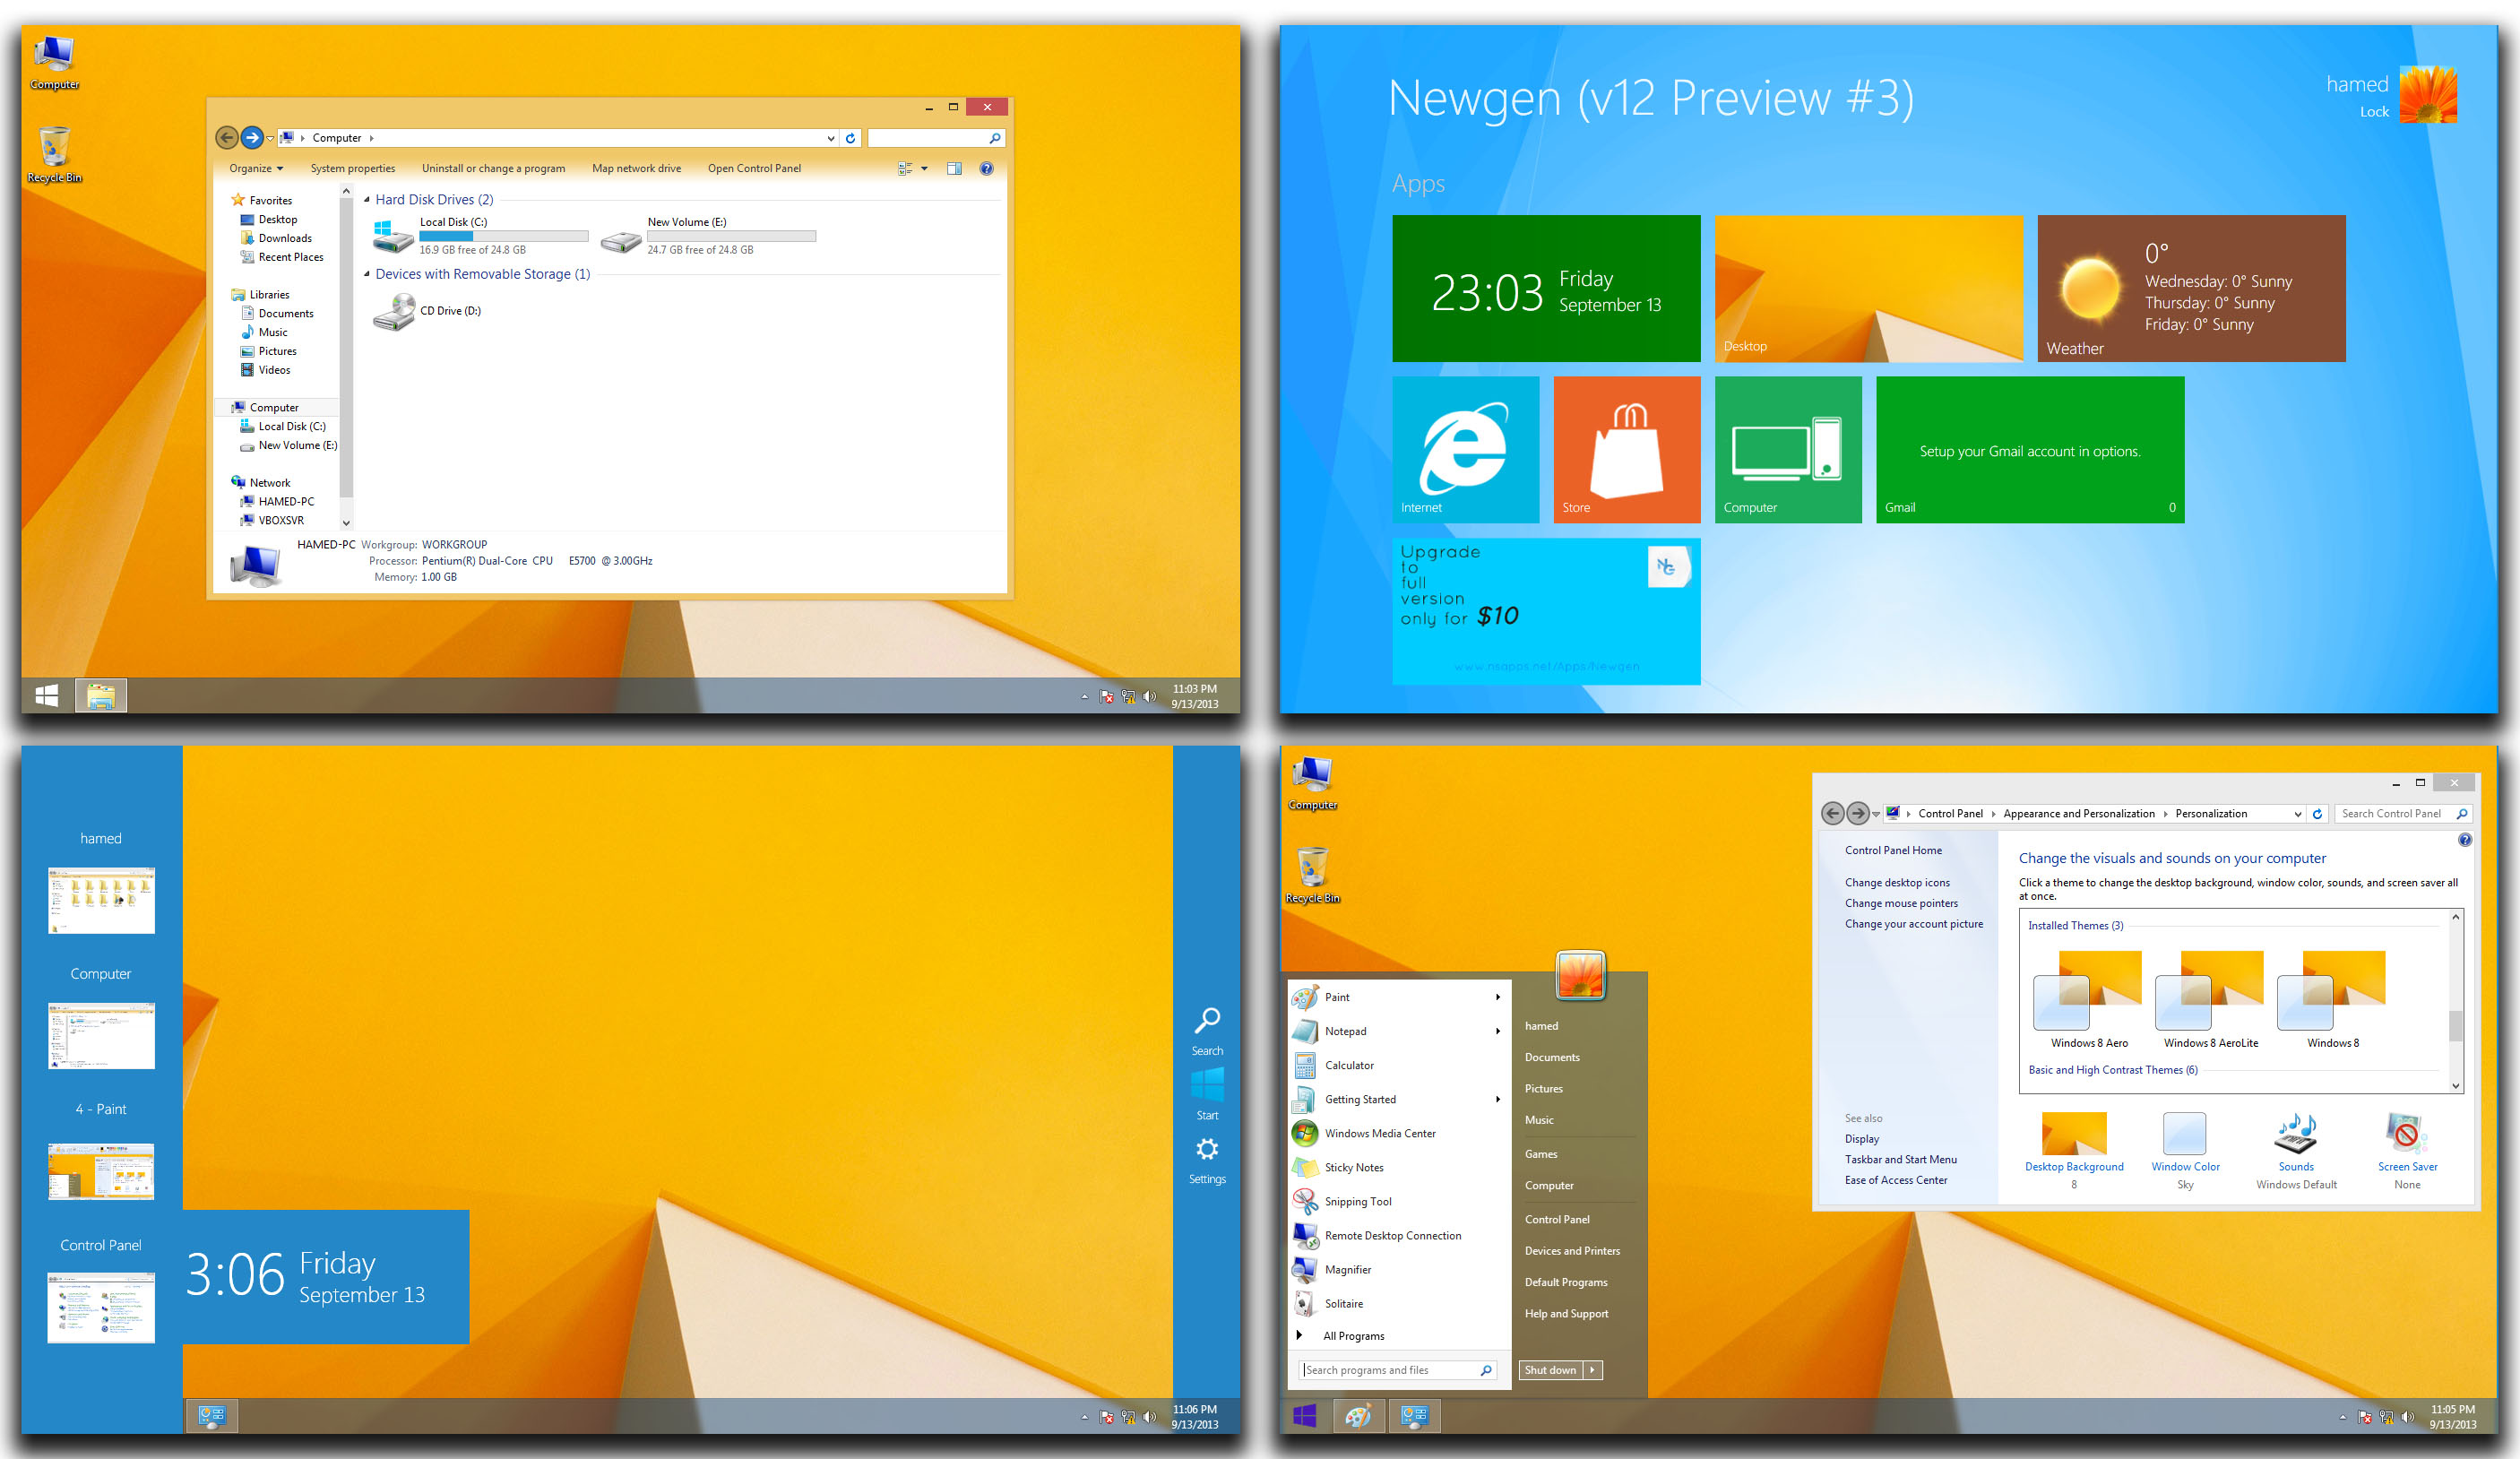 Windows 8.1 Skinpack 1.0 Tema Türkçe x86/x64 Bit Full indir Windows 8.1 windows 7 teması indir,Windows 8.1 Skinpack türkçe indir,Windows 8.1 Skinpack Tema full indir